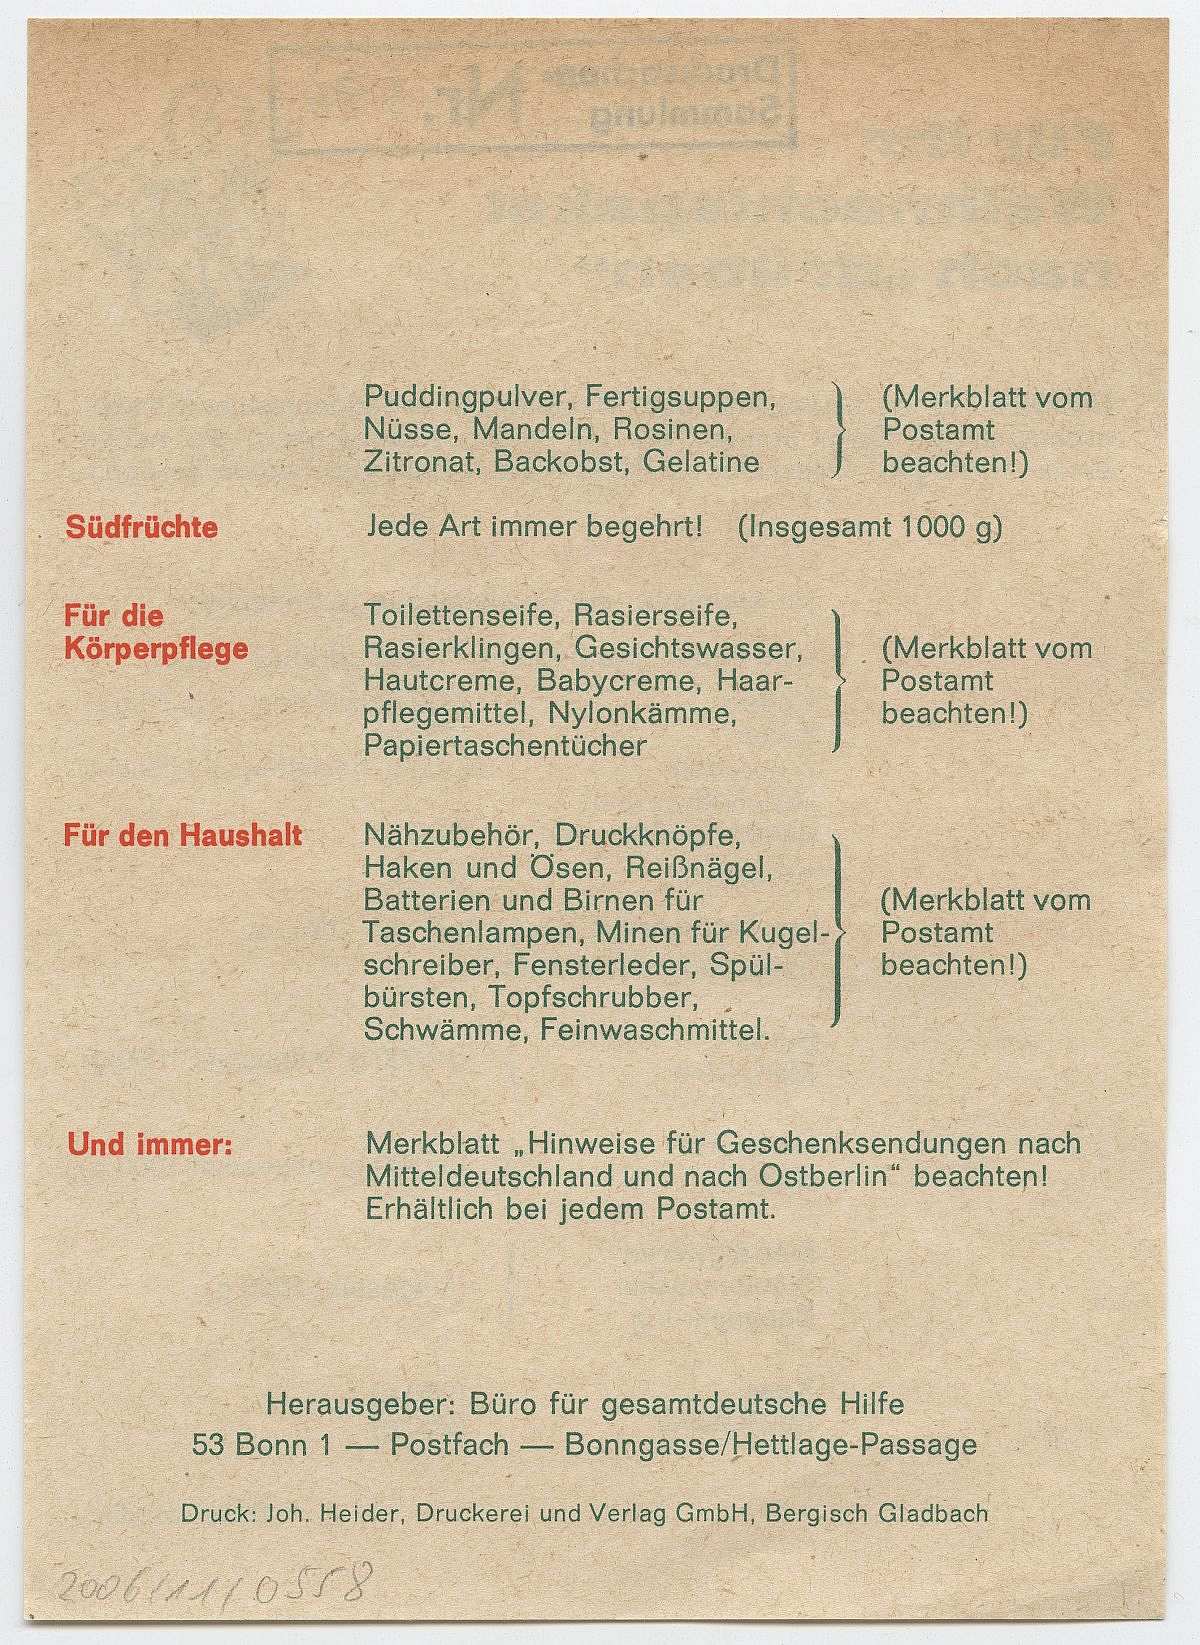 Beigefarbenes, doppelseitig bedrucktes Blatt, grün-rote Beschriftung. Rechts oben die Zeichnung eines Tannenzweiges mit Päckchen, Kerze und Kugel. Nachfolgend und auf der Rückseite Vorschläge und Geschenkideen für den Inhalt eines Weihnachtspaketes in die DDR.